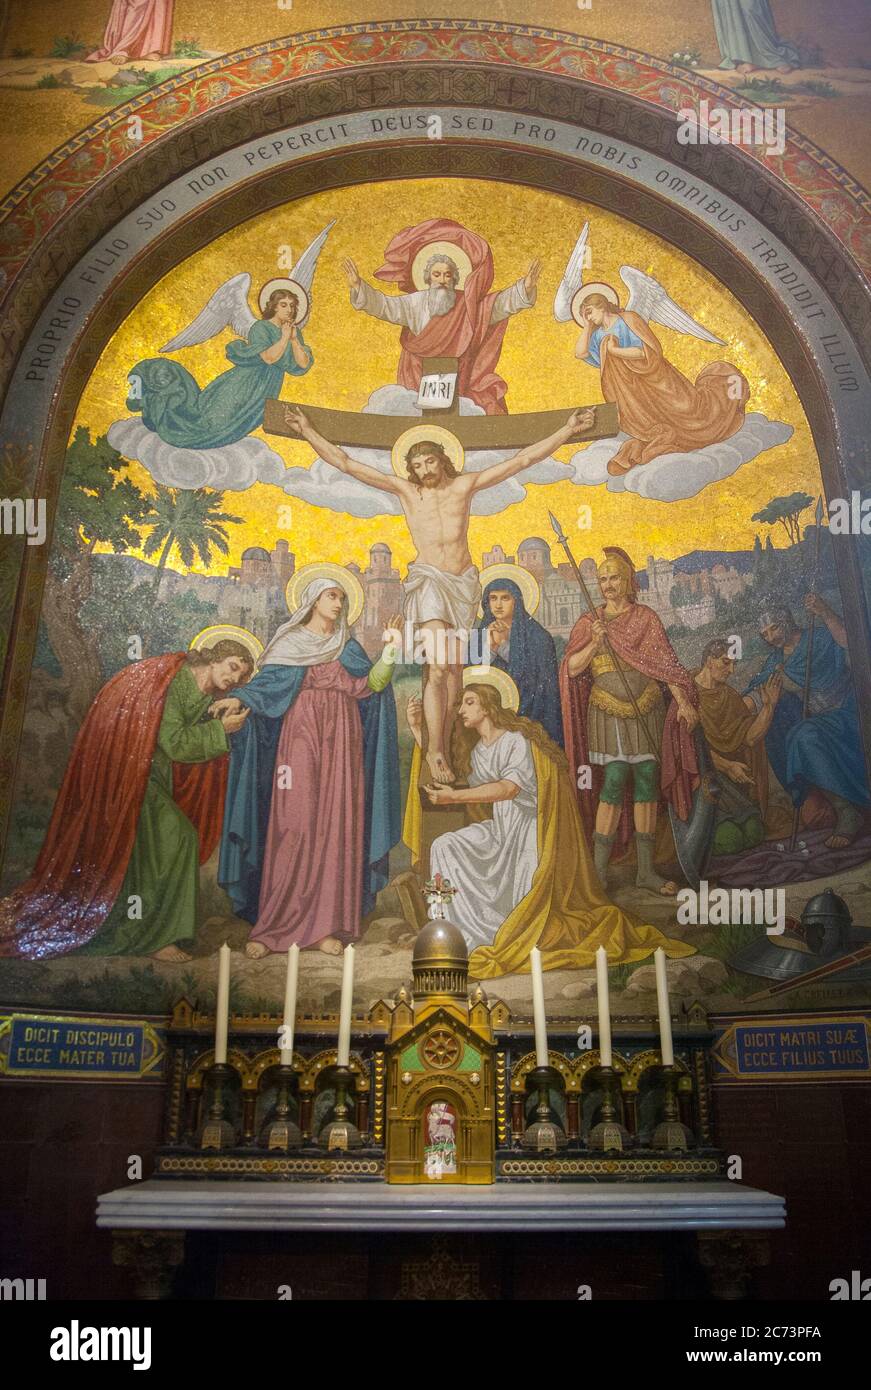 Abr 28. 2014 Lourdes Francia Dios le ha dado todo por nosotros. Murales monumentales de mosaico adornan el interior de la Basílica del Rosario. Foto de stock